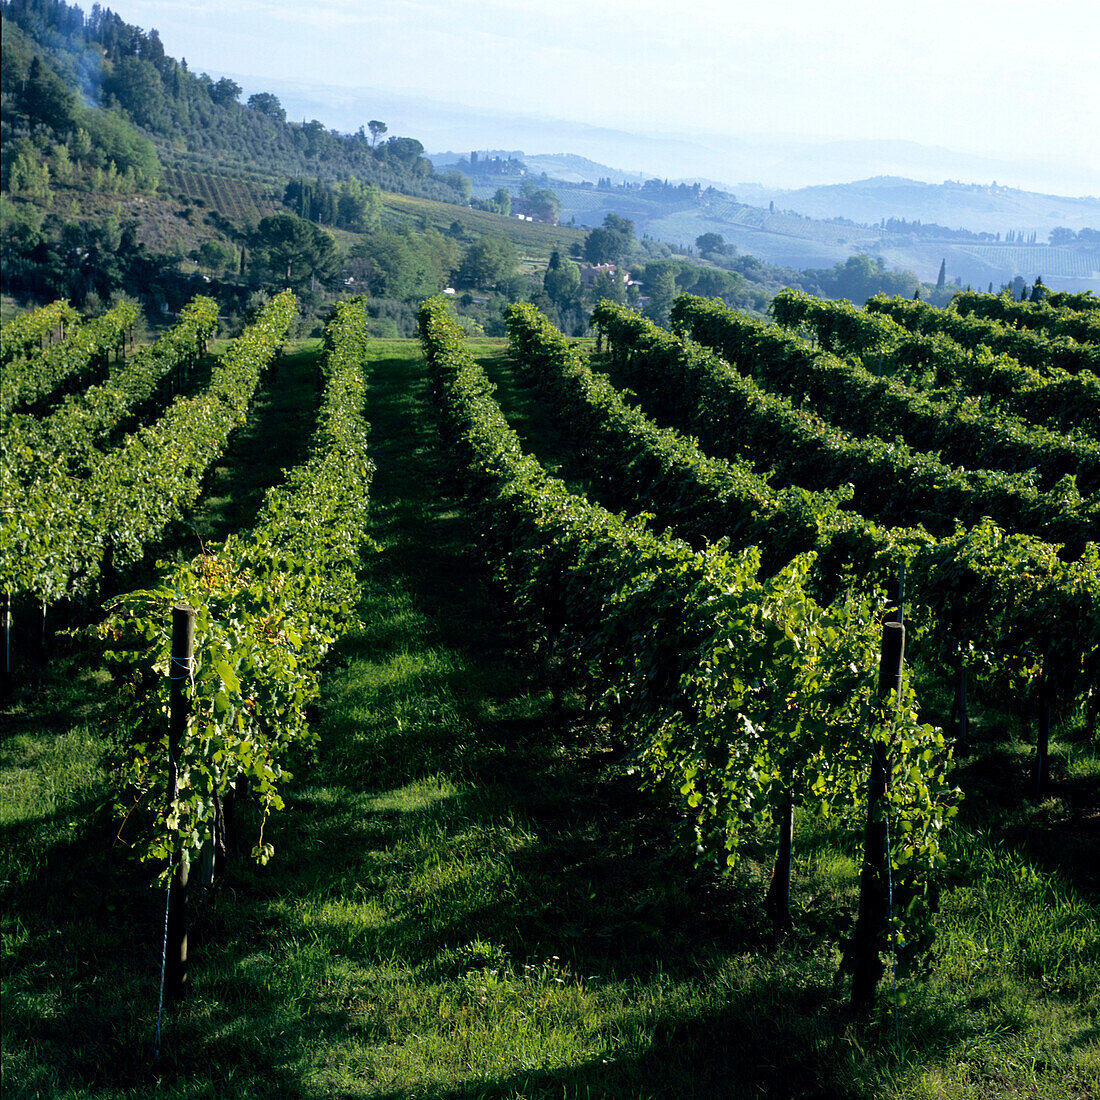 Blick auf Weinfeld, San Gimignano, Toskana, Italien